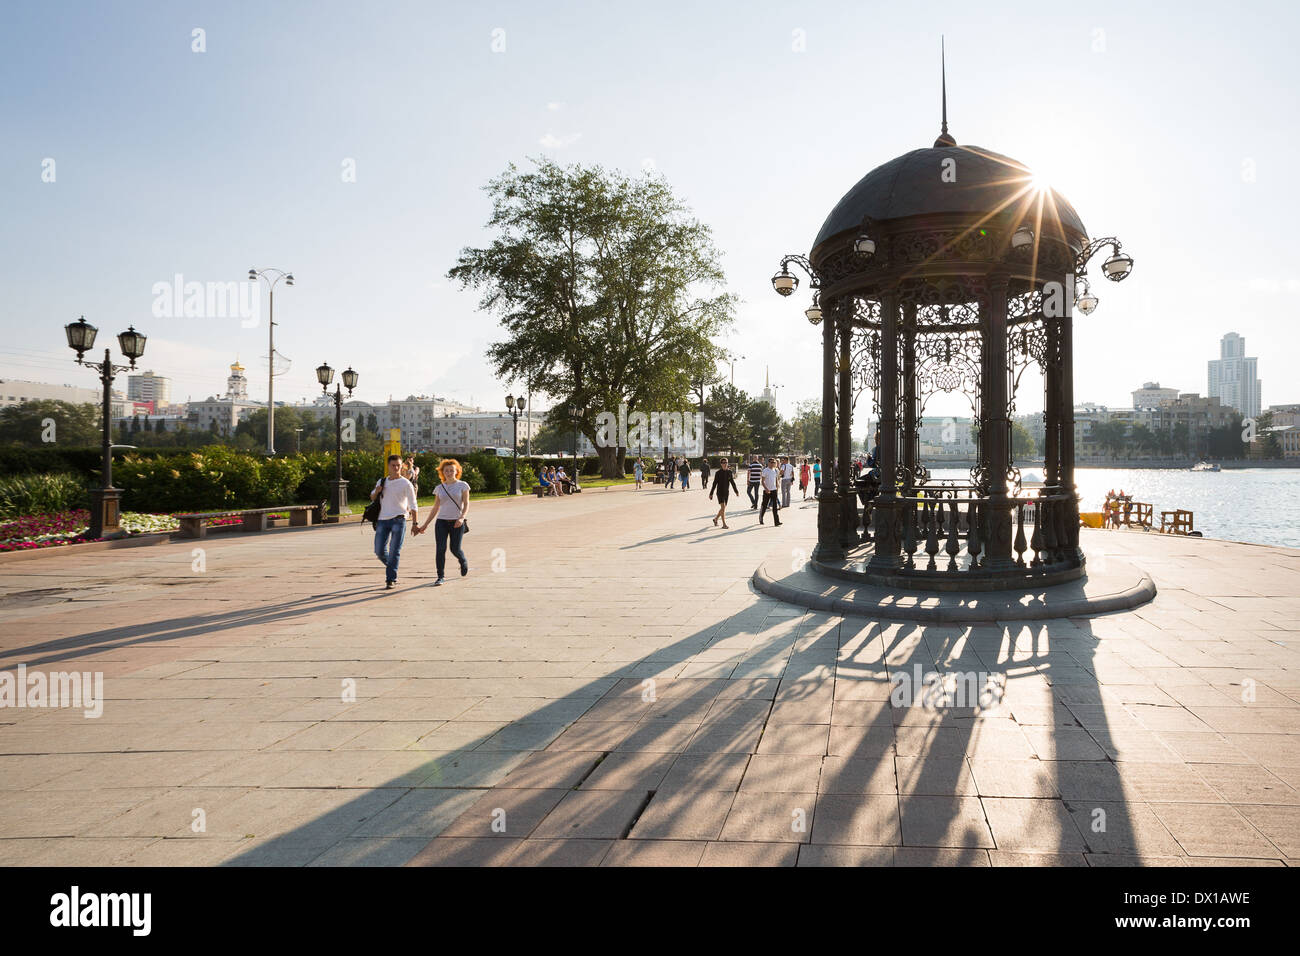 Yekaterinburg centro histórico de la ciudad. Abrir trabajo pabellones de hierro fundido. Foto de stock